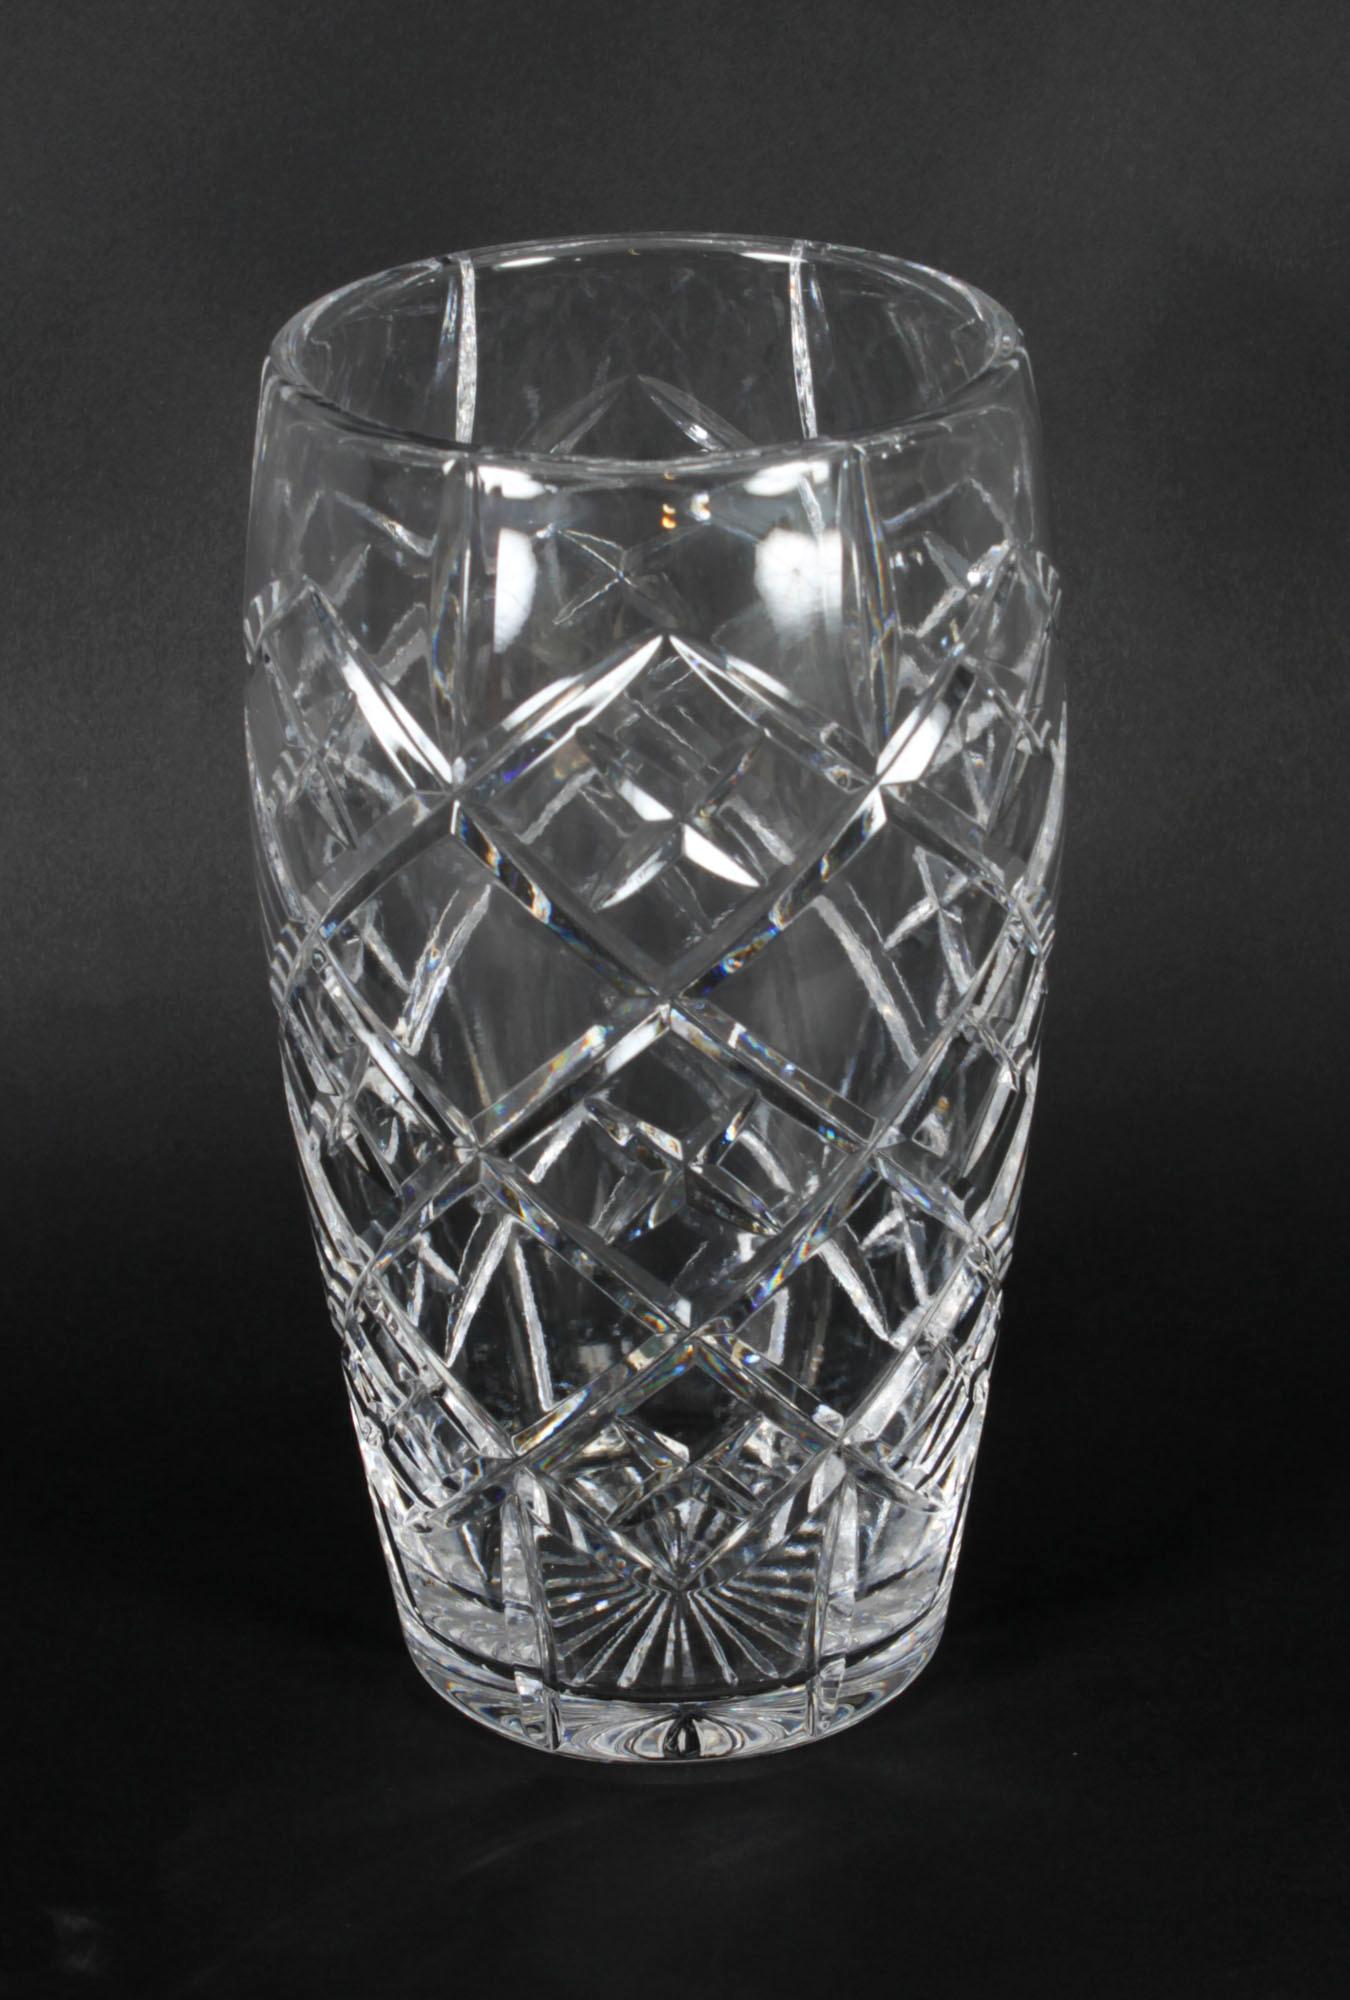 Se trata de un espléndido jarrón inglés antiguo de cristal tallado, datado hacia 1900.
 
Este maravilloso jarrón cilíndrico es ideal para casi cualquier arreglo floral, mientras que el propio jarrón presume de estabilidad y peso reconfortante.